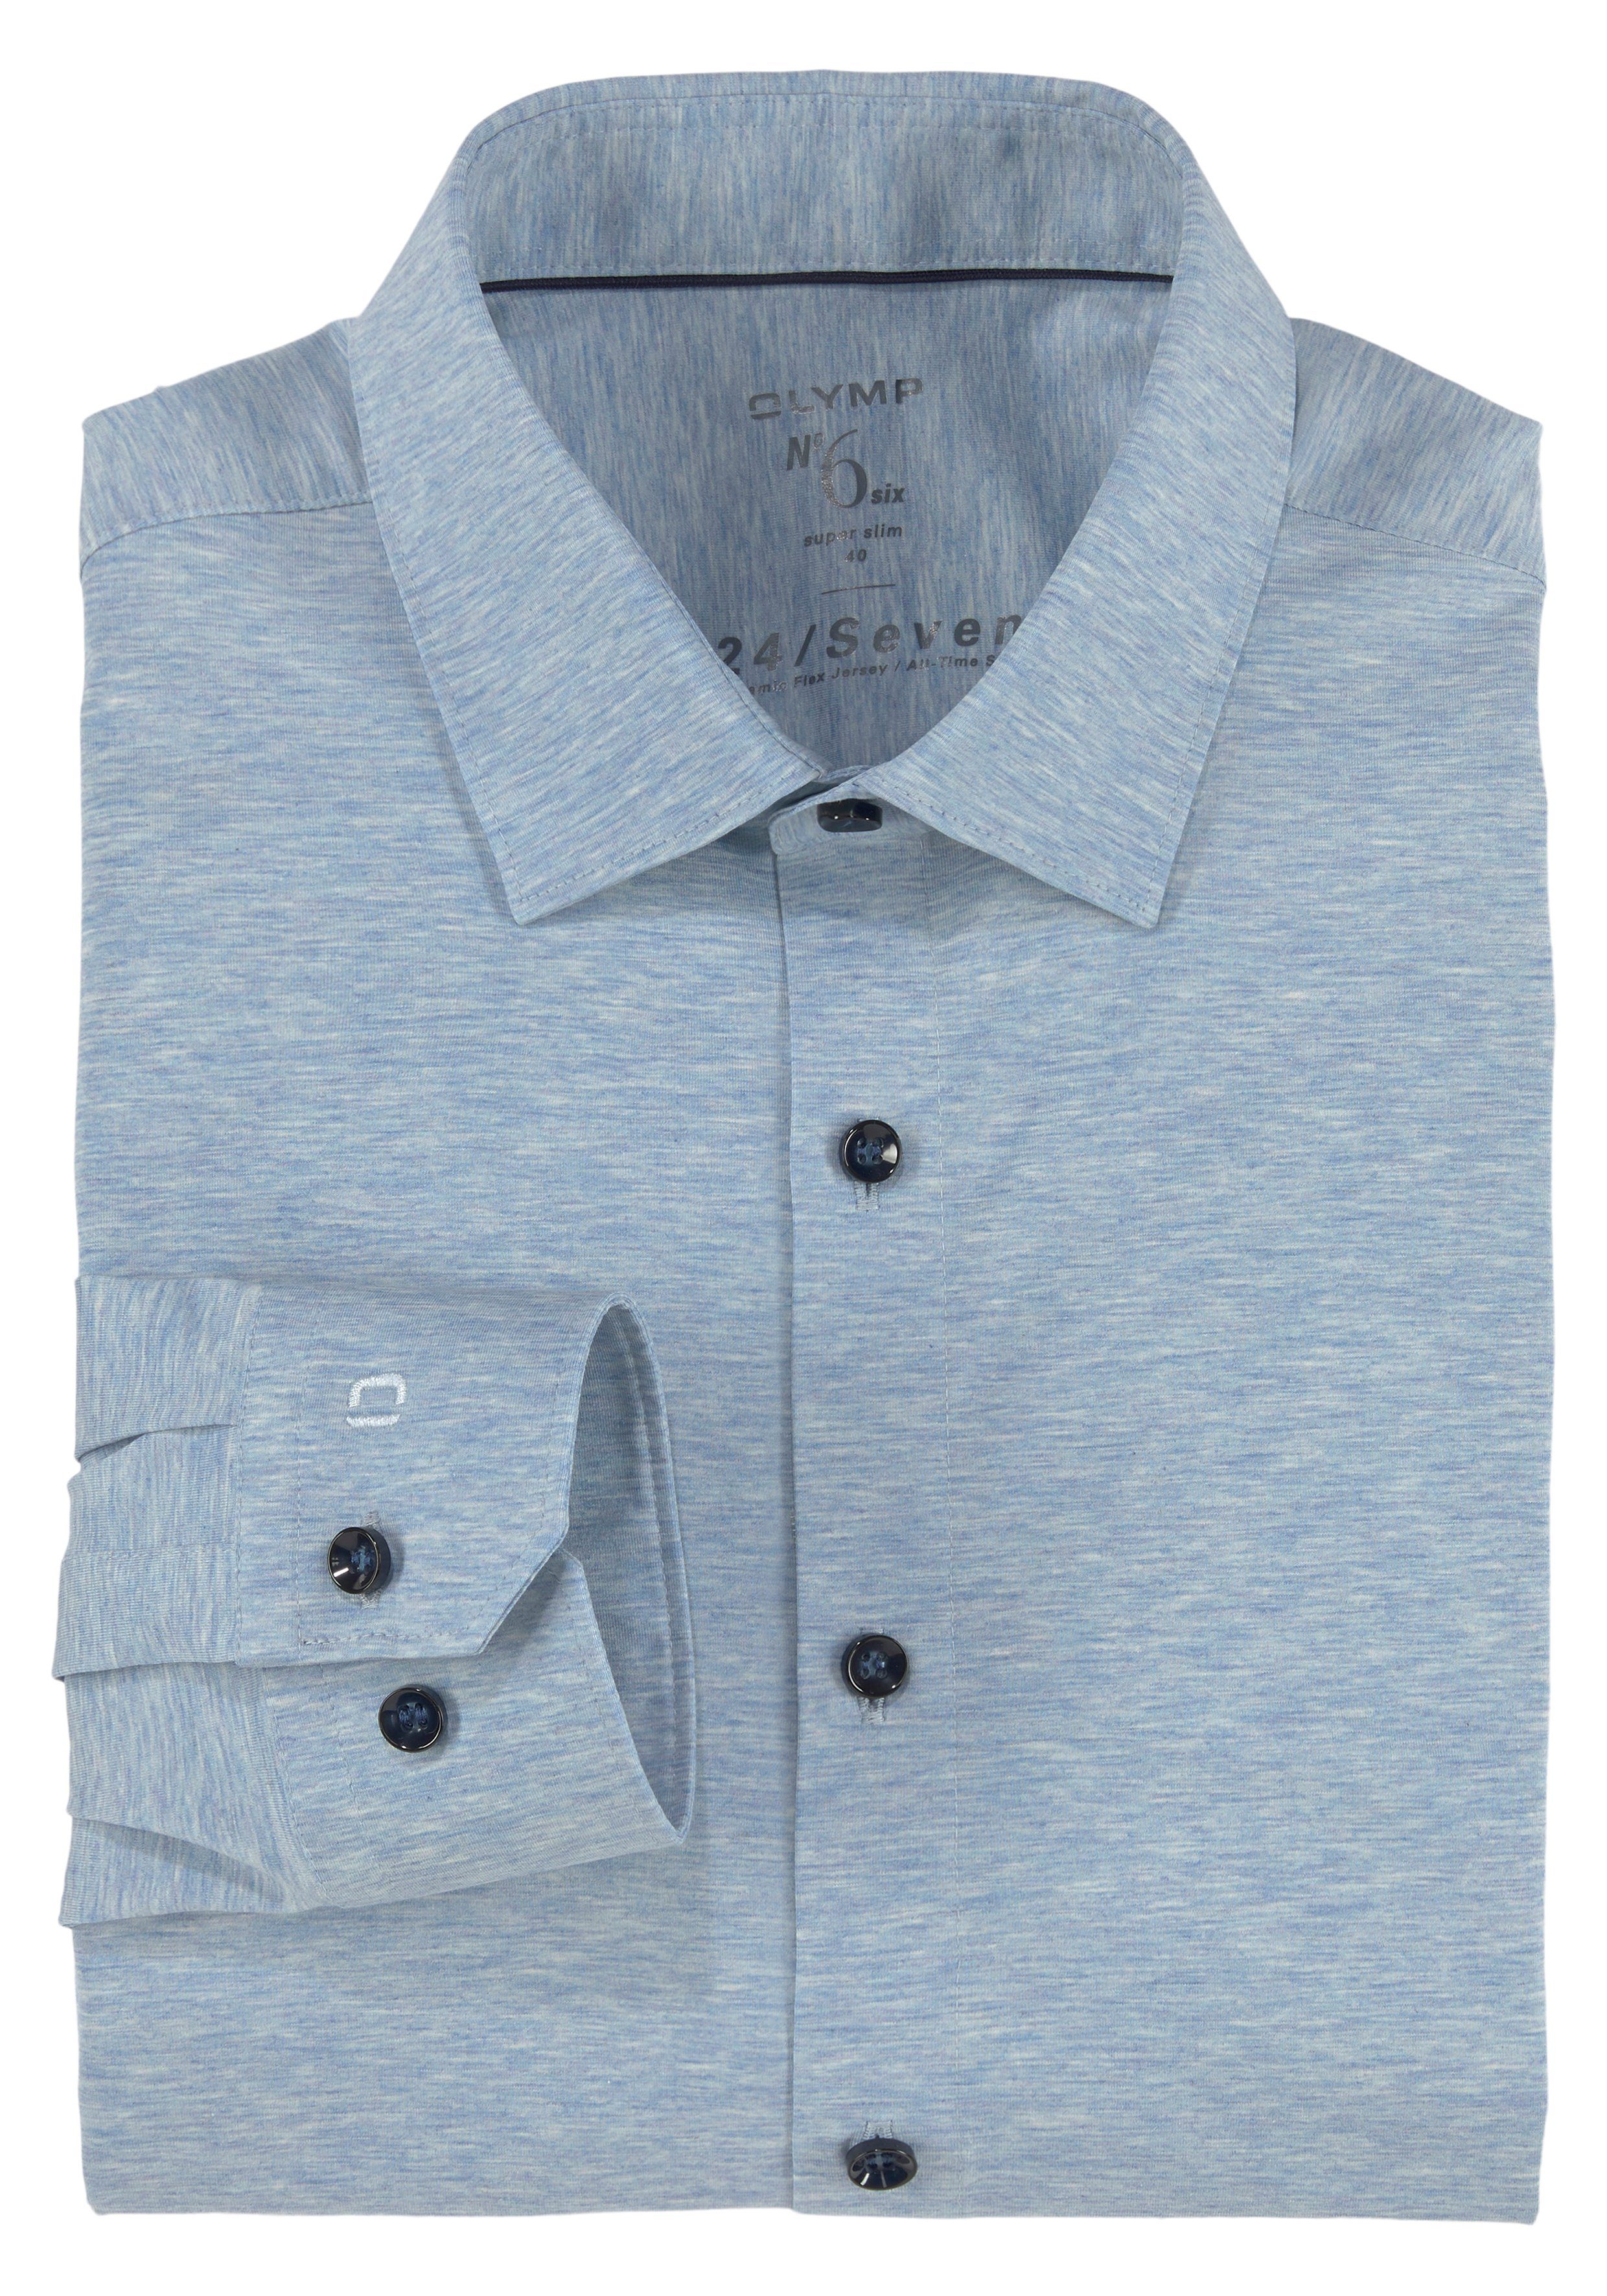 No. Businesshemd OLYMP bleu-meliert in super bequemer Six Jersey-Qualität slim